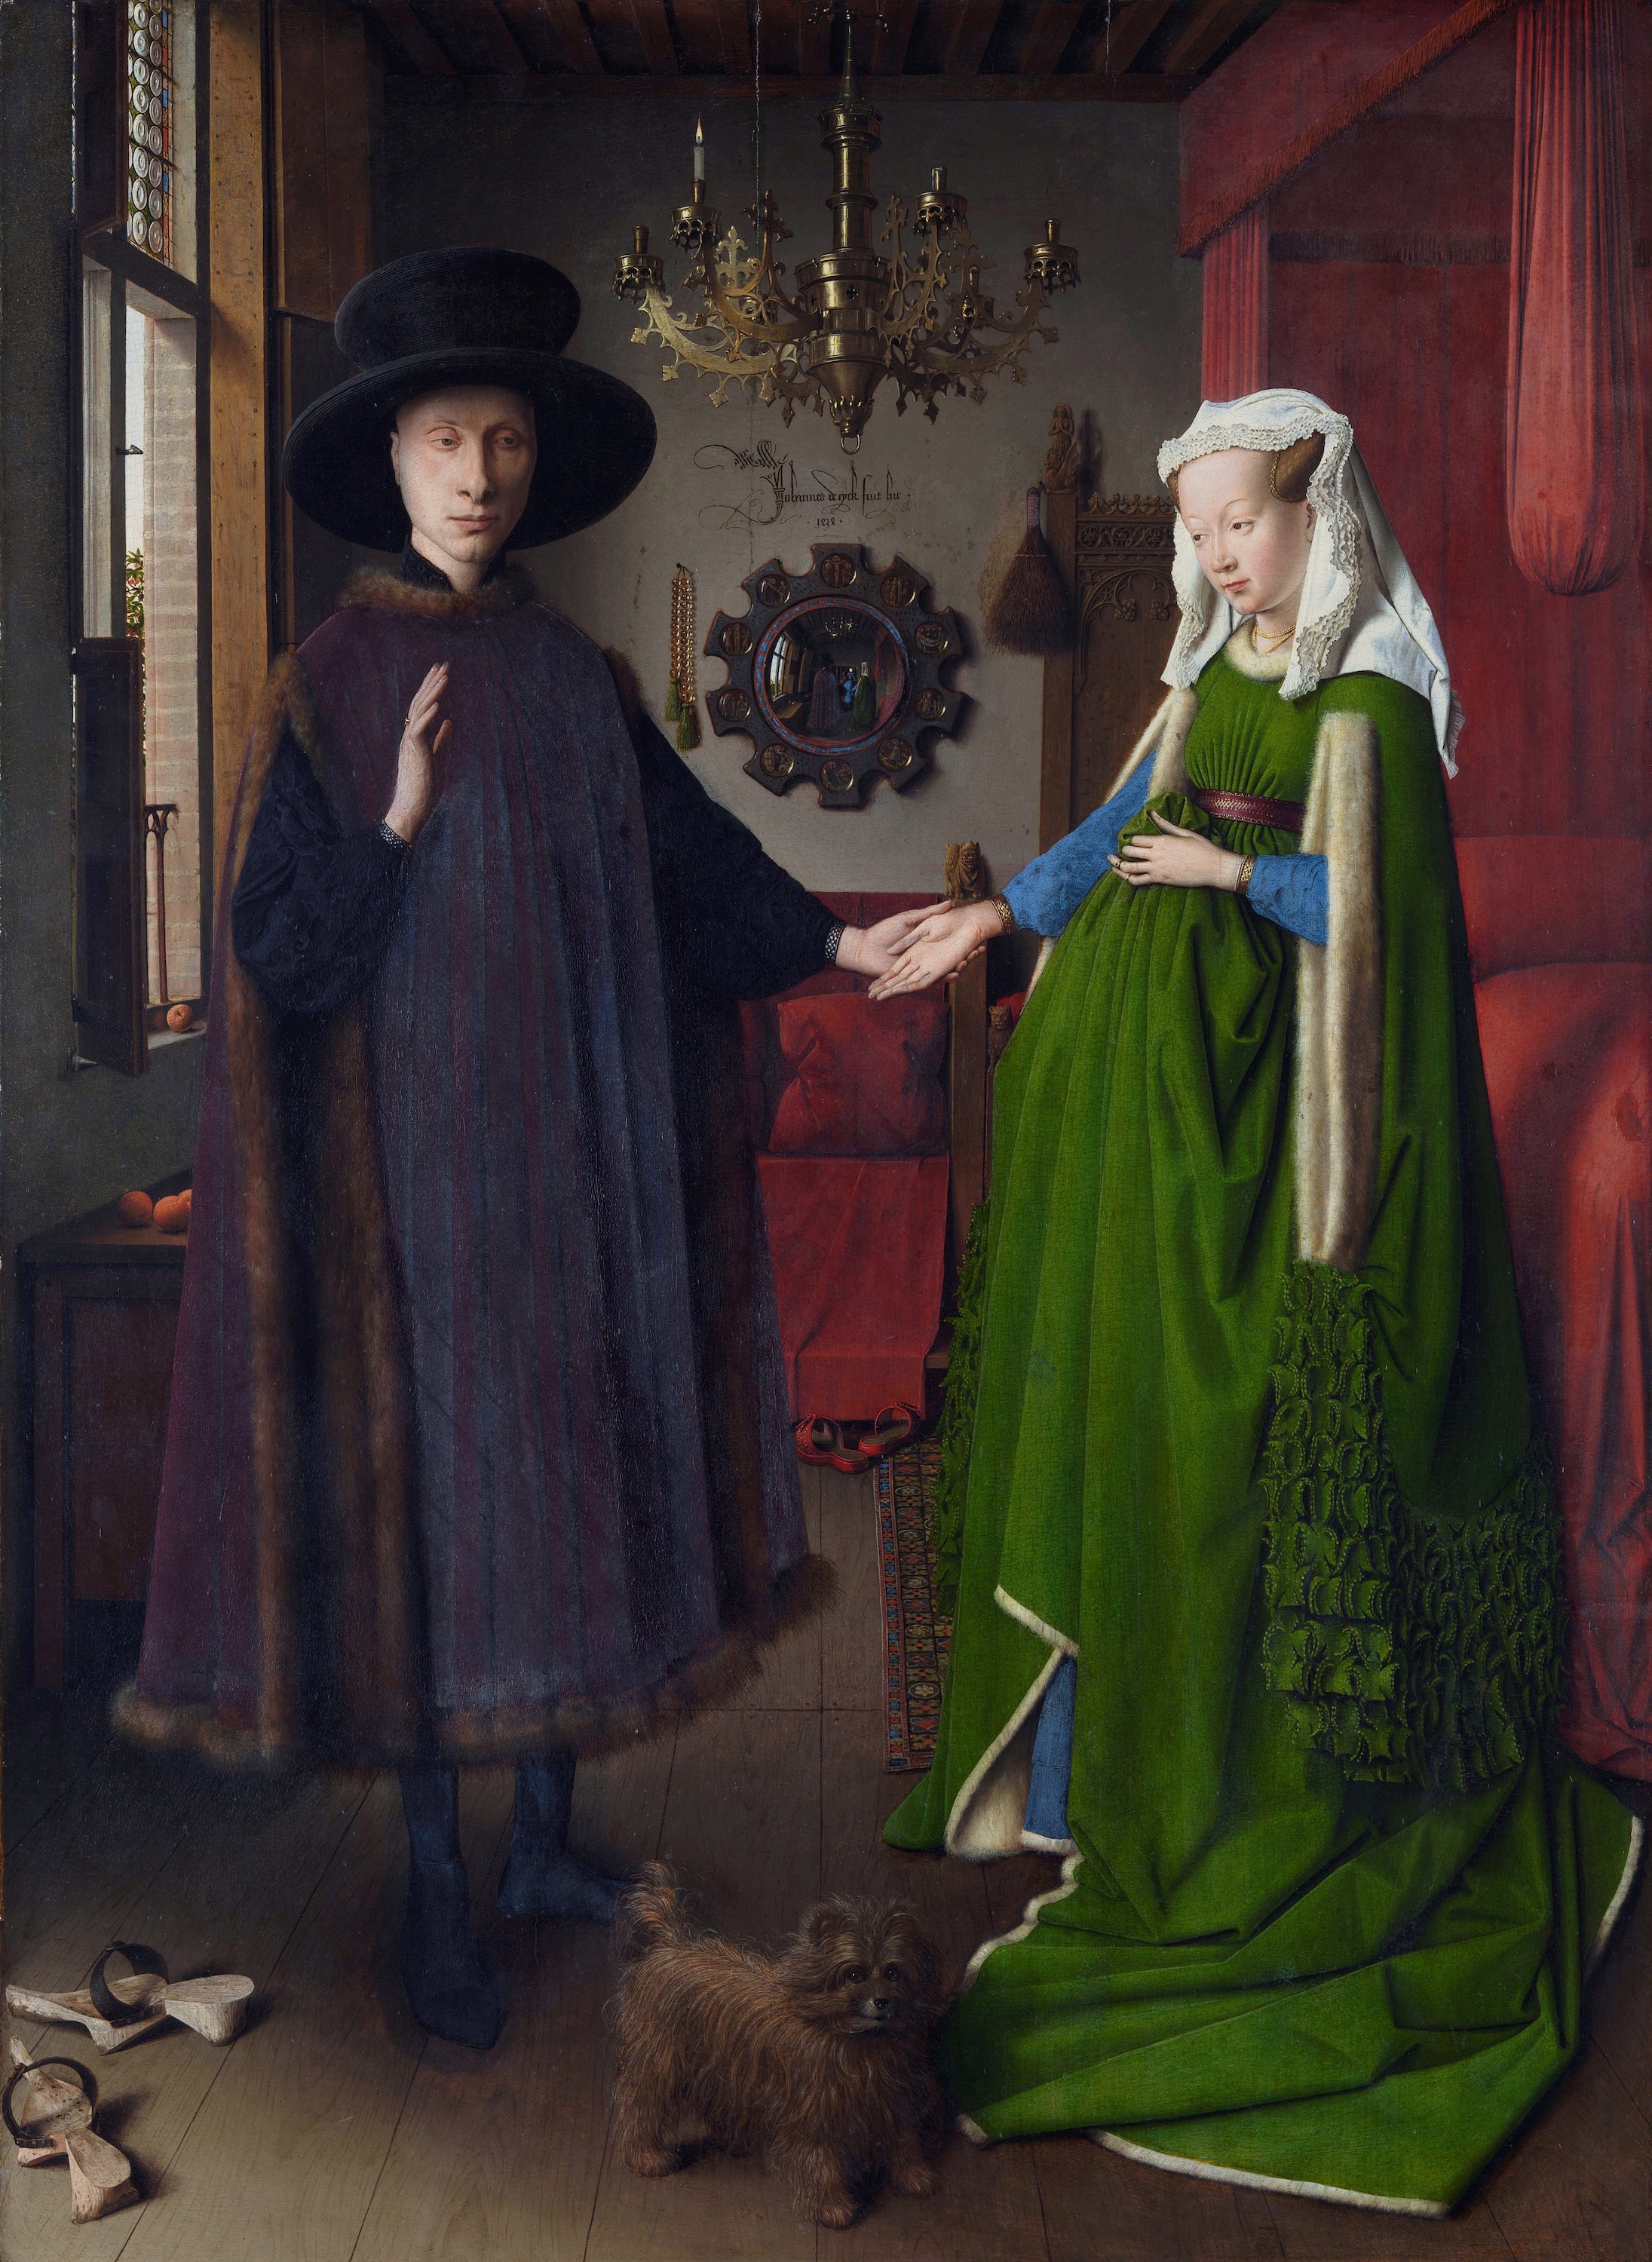 Az Arnolfini Portré by Jan van Eyck - 1434 - 82 x 60 cm 